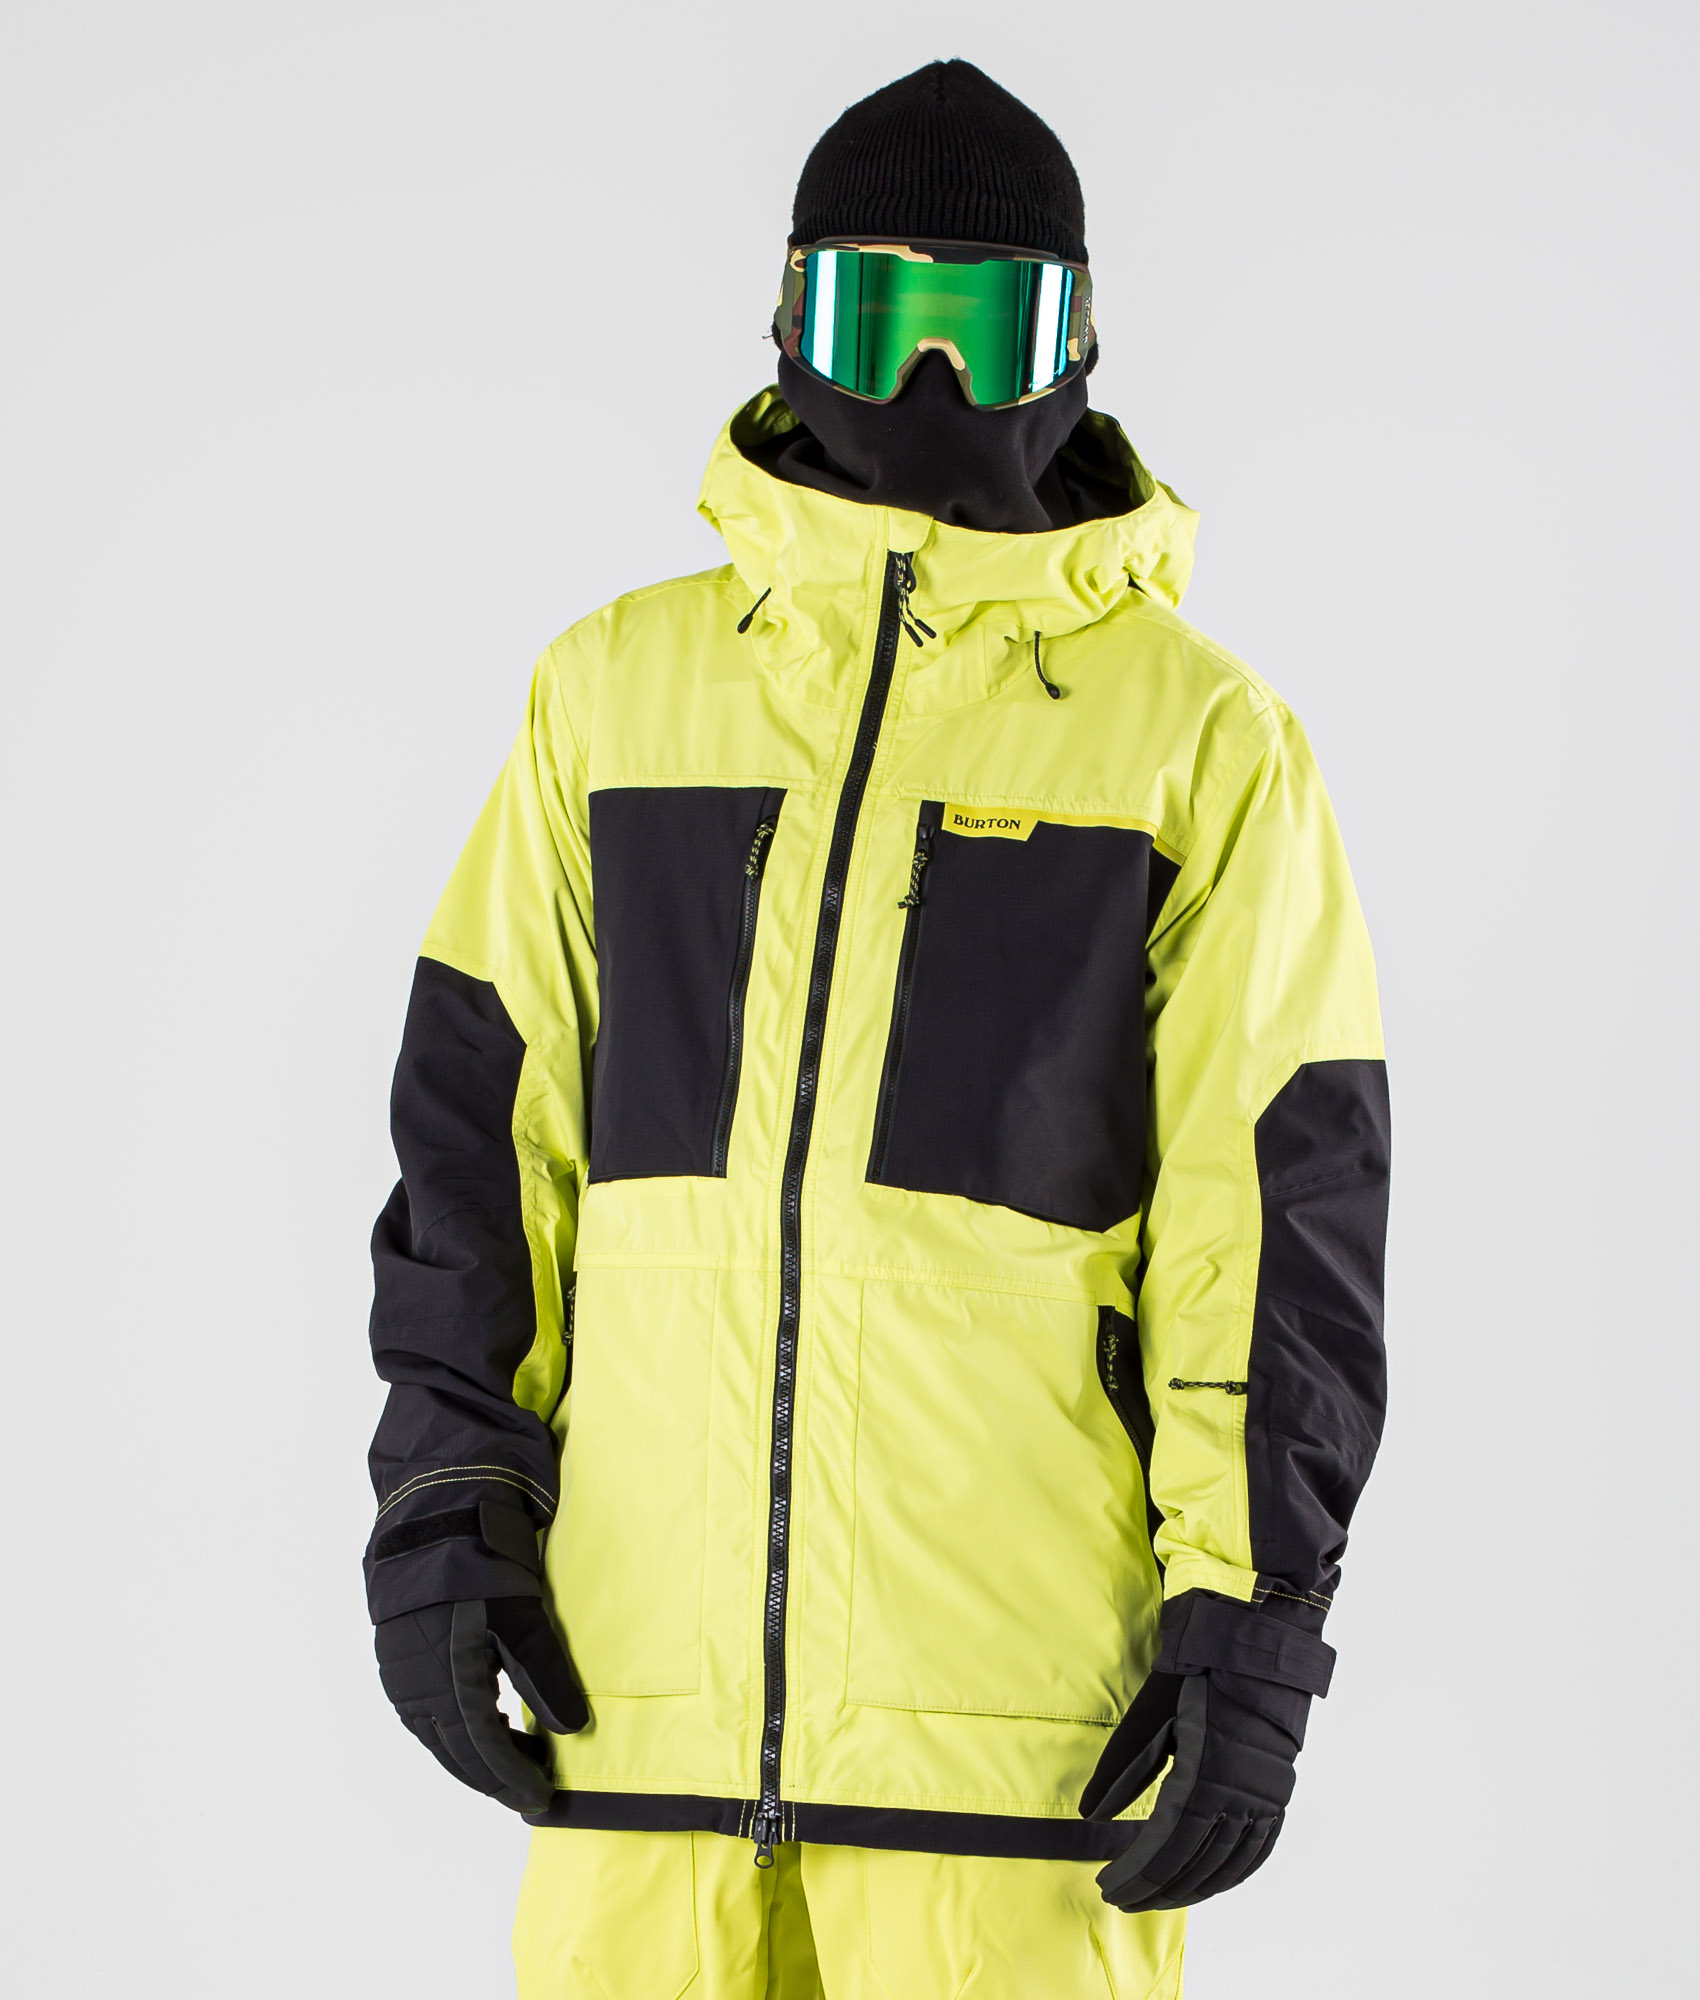 BURTON Snowboard Skijacke Winterjacke FROSTNER Jacke 2021 limeade/true black